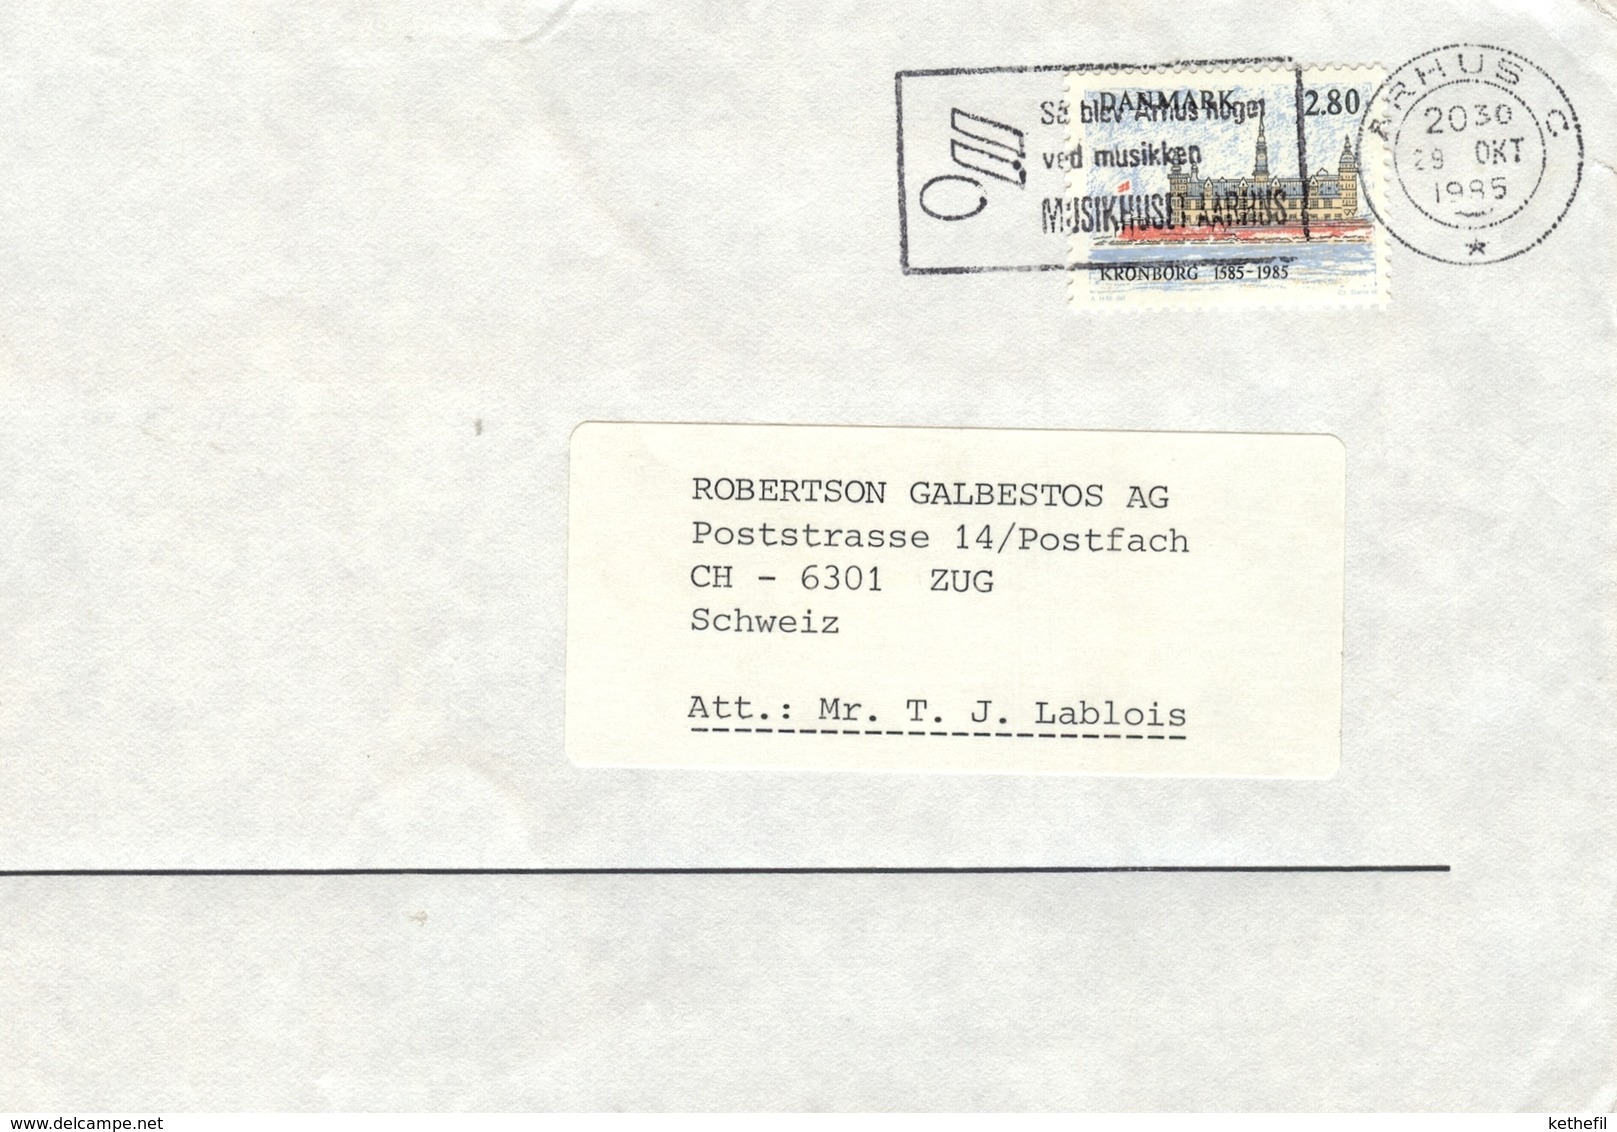 29.10.1989 Arhus Music Musicale Note Muzieknoot Musikhuset  Ved Musikkep - Macchine Per Obliterare (EMA)